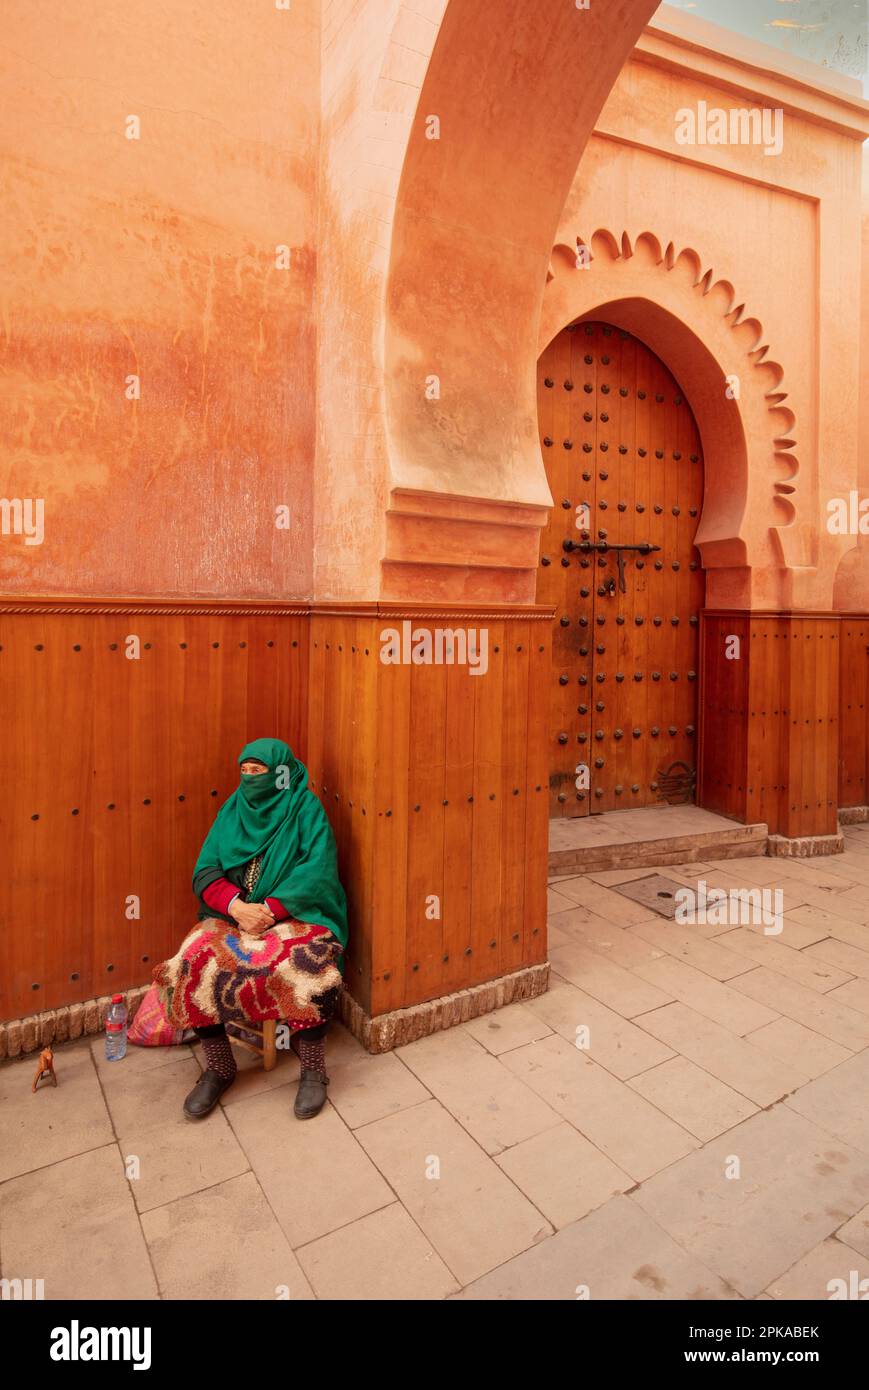 Marokko, Marrakesch, Madersa Ben Youssef Madrasa, schöne Architektur, sitzende Frau mit grünem Schleier vor dem braunen orangefarbenen Gebäude Stockfoto